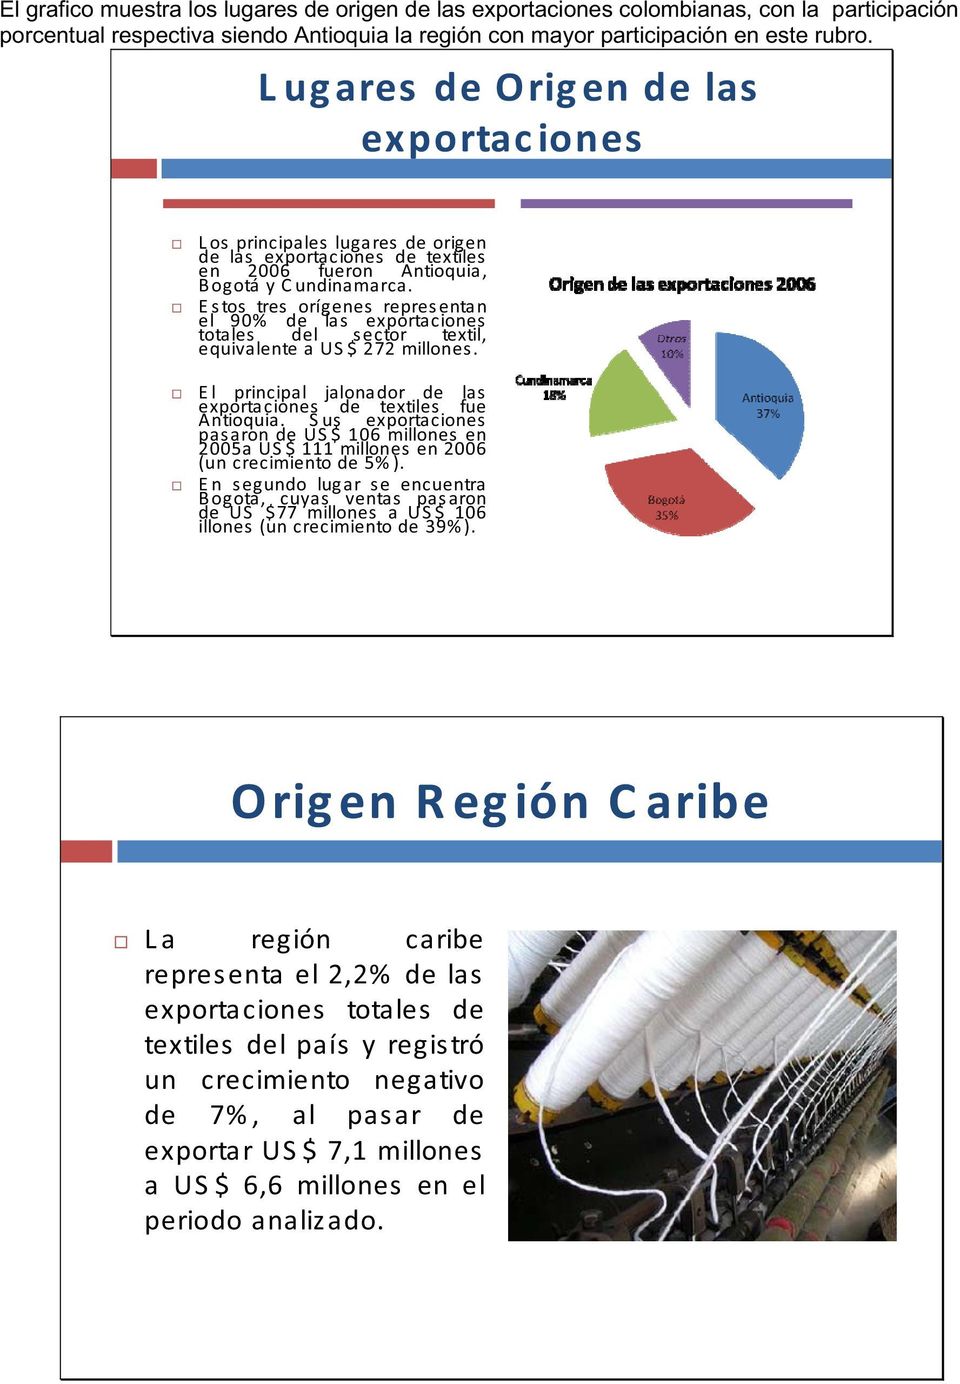 E s tos tres orígenes repres entan el 90% de las exportaciones totales del s ector textil, equivalenteaus $ 272millones. El principal jalonador de las exportaciones de textiles fue Antioquia.